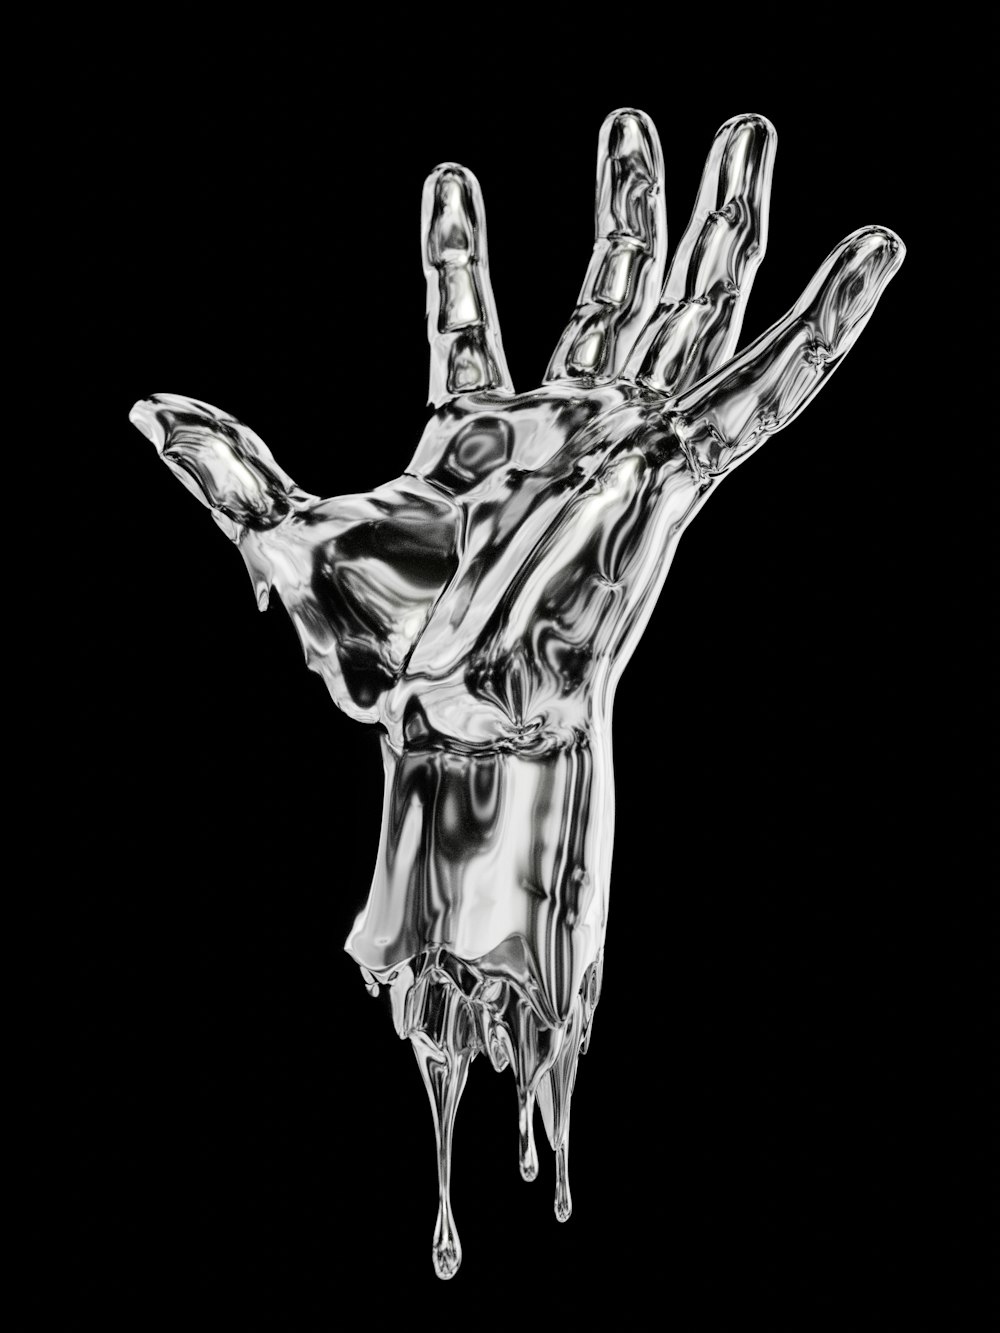 Une photo en noir et blanc d’une main dégoulinante